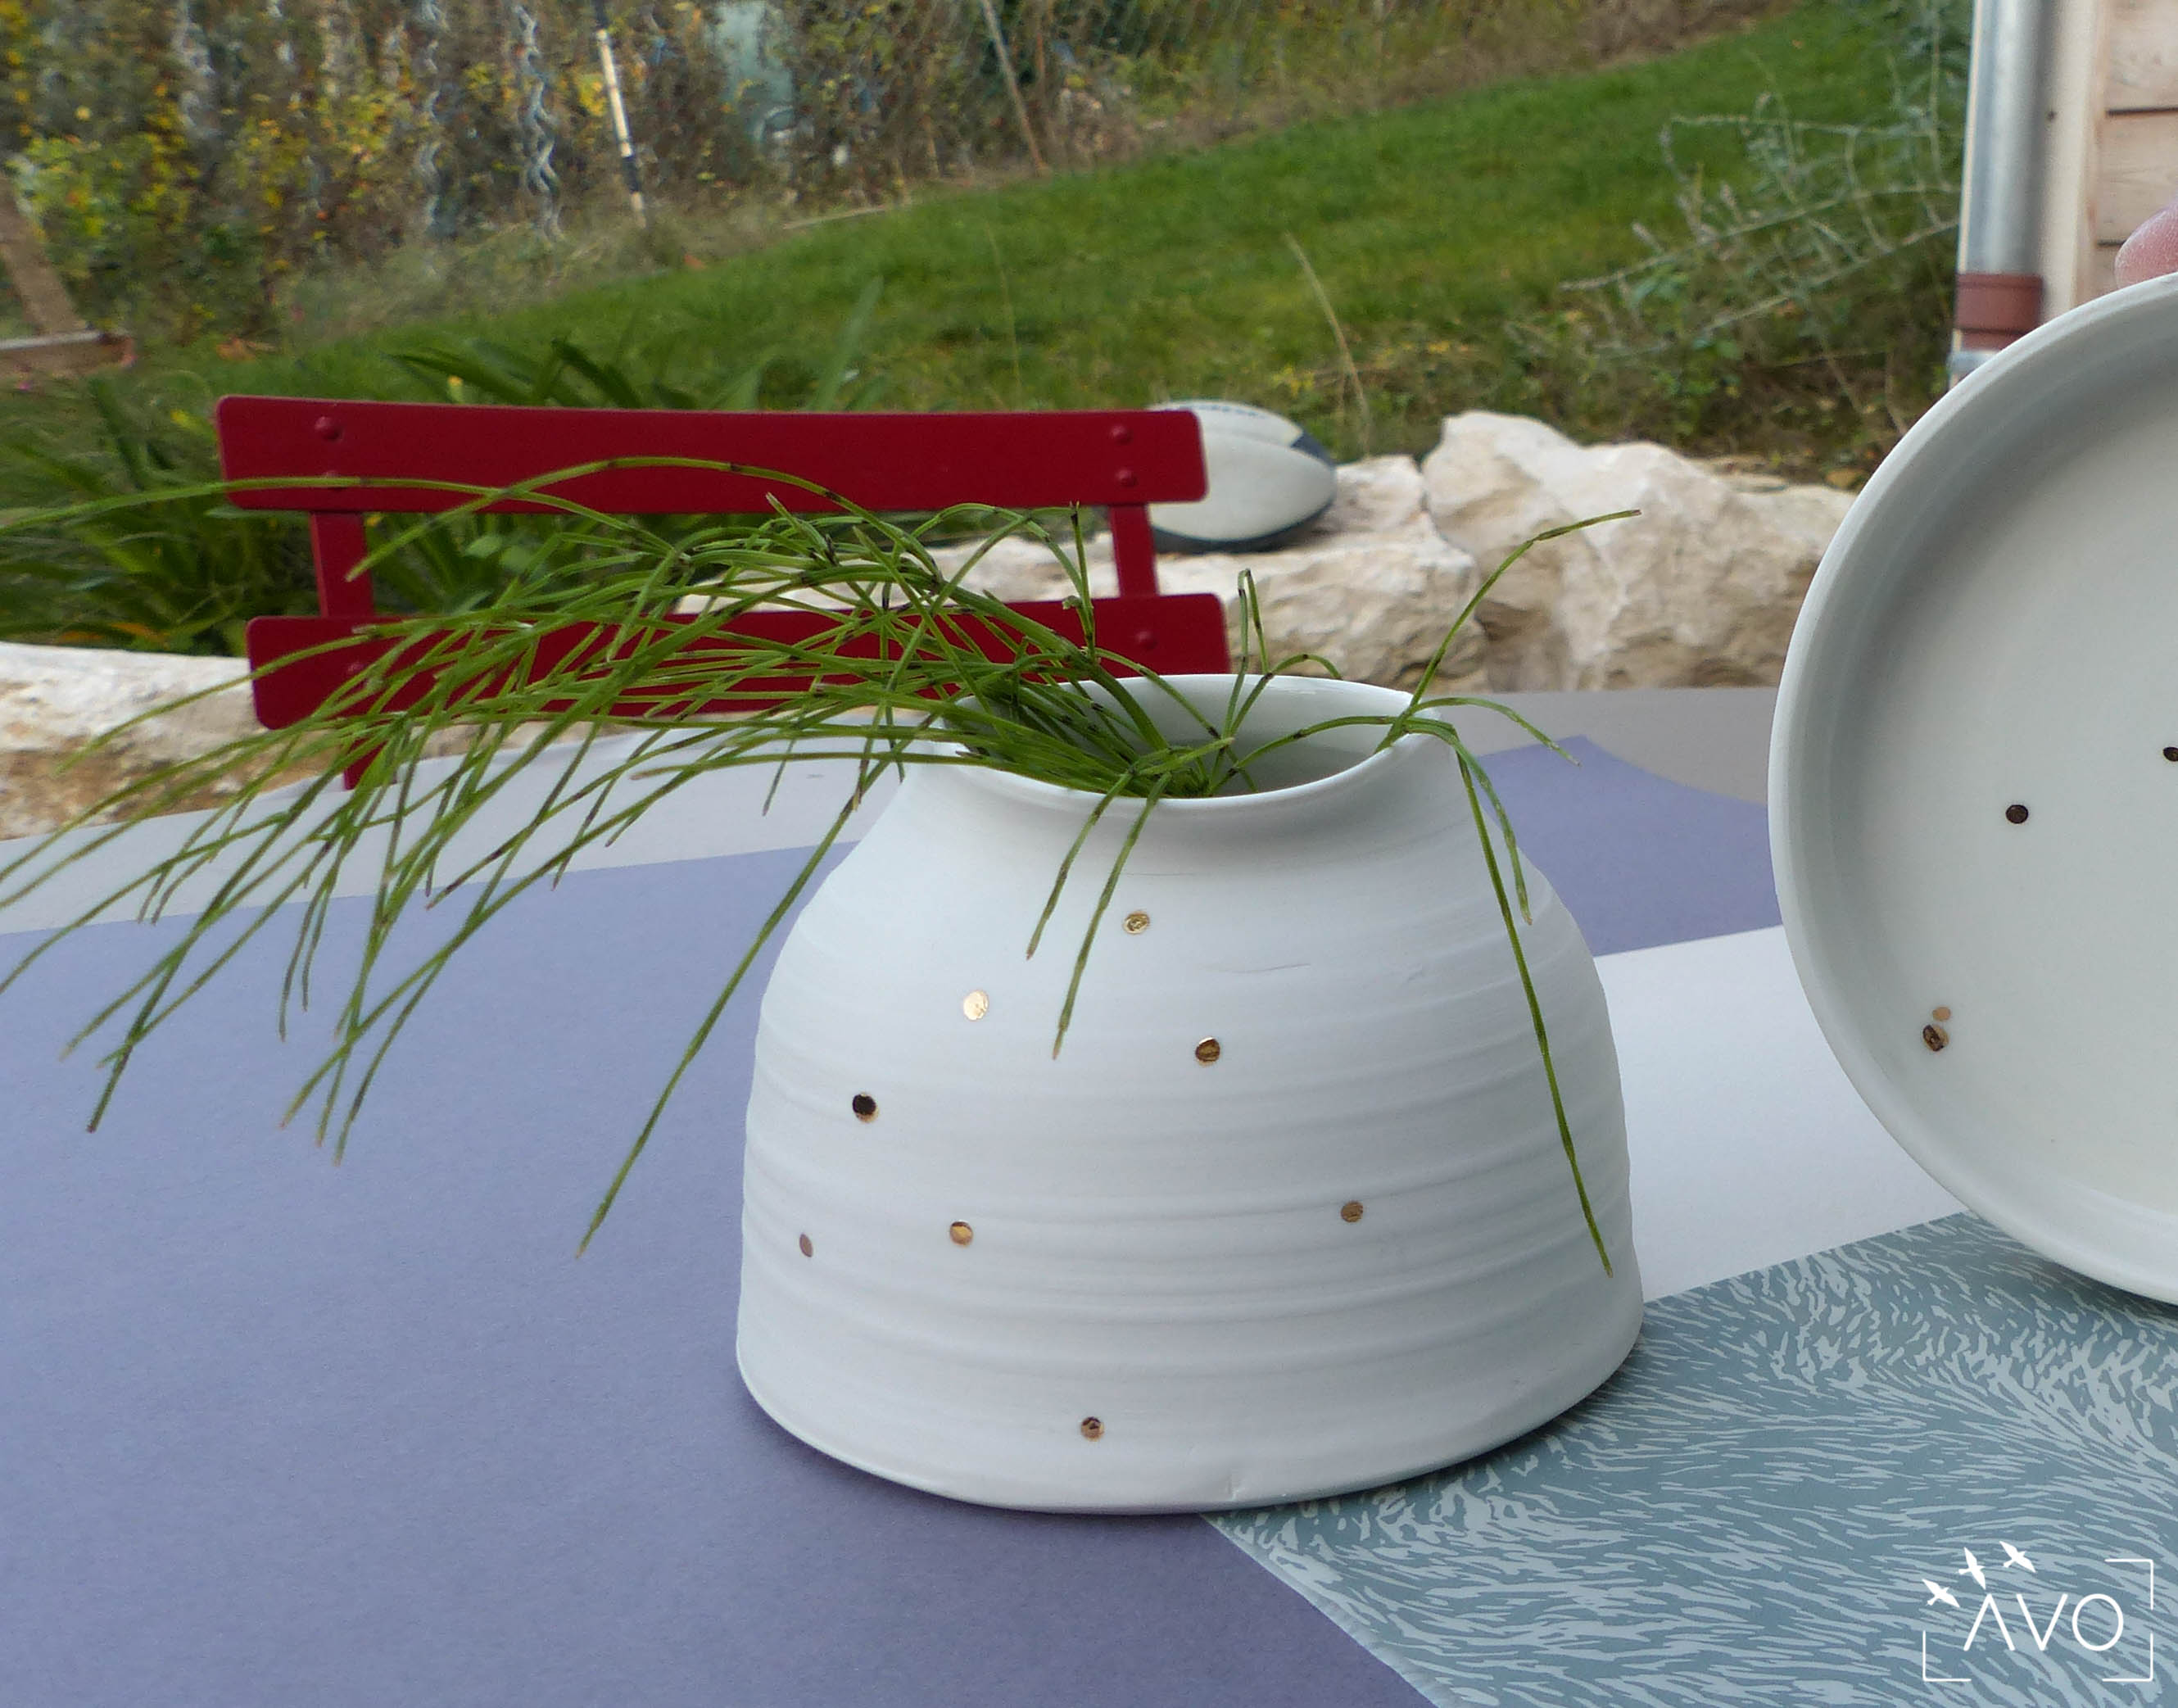 atelier hortense motarnal lyon poterie céramique fait main made in france déco design maison pot